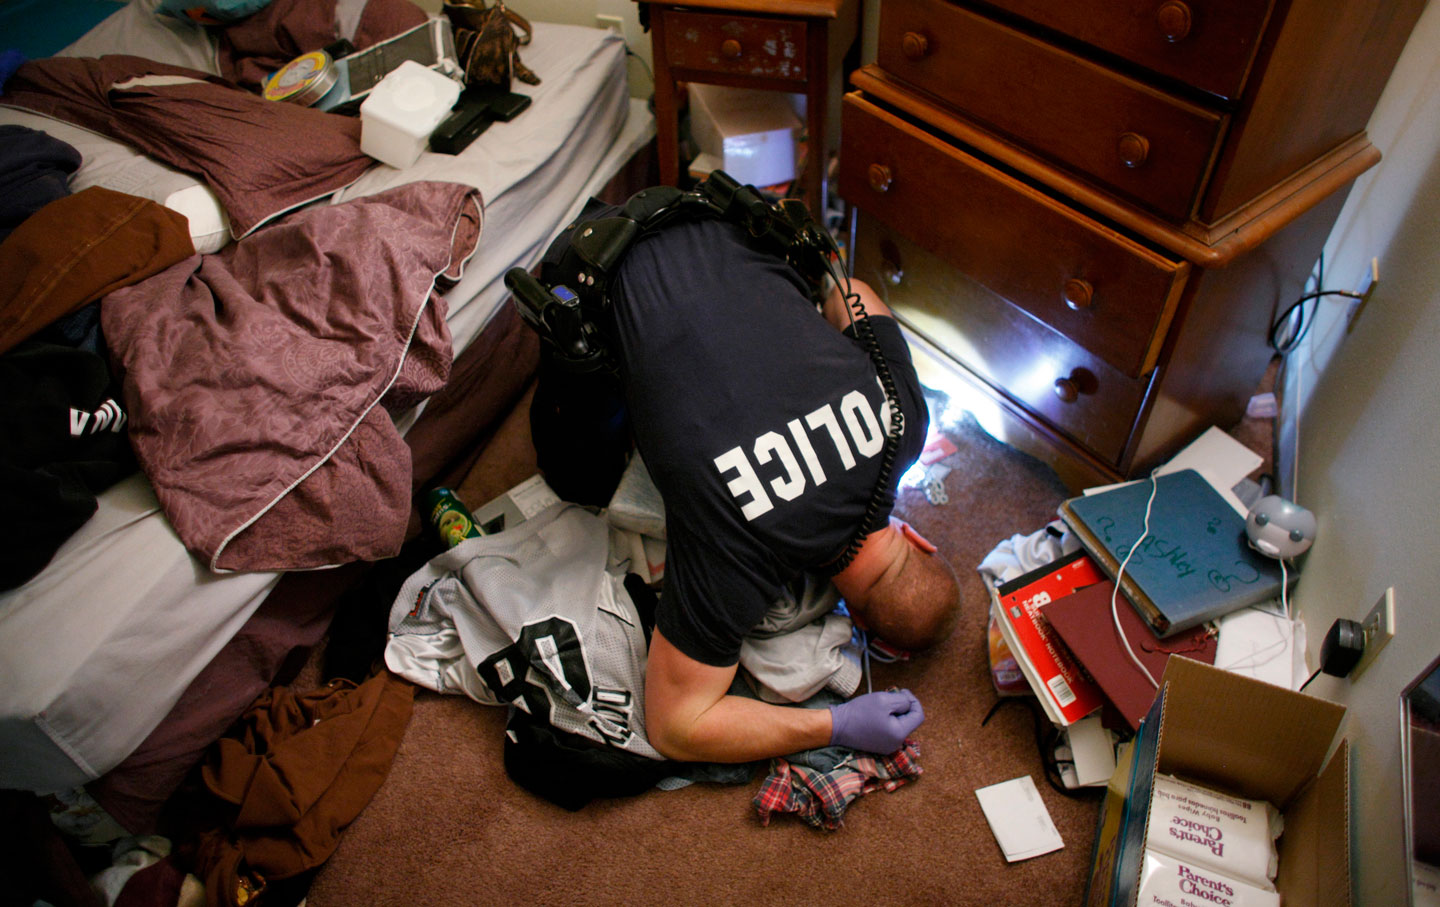 Search and seizure: A drug bust in Kalamazoo, Michigan, November 12, 2009. (Credit: John Gress / Reuters)